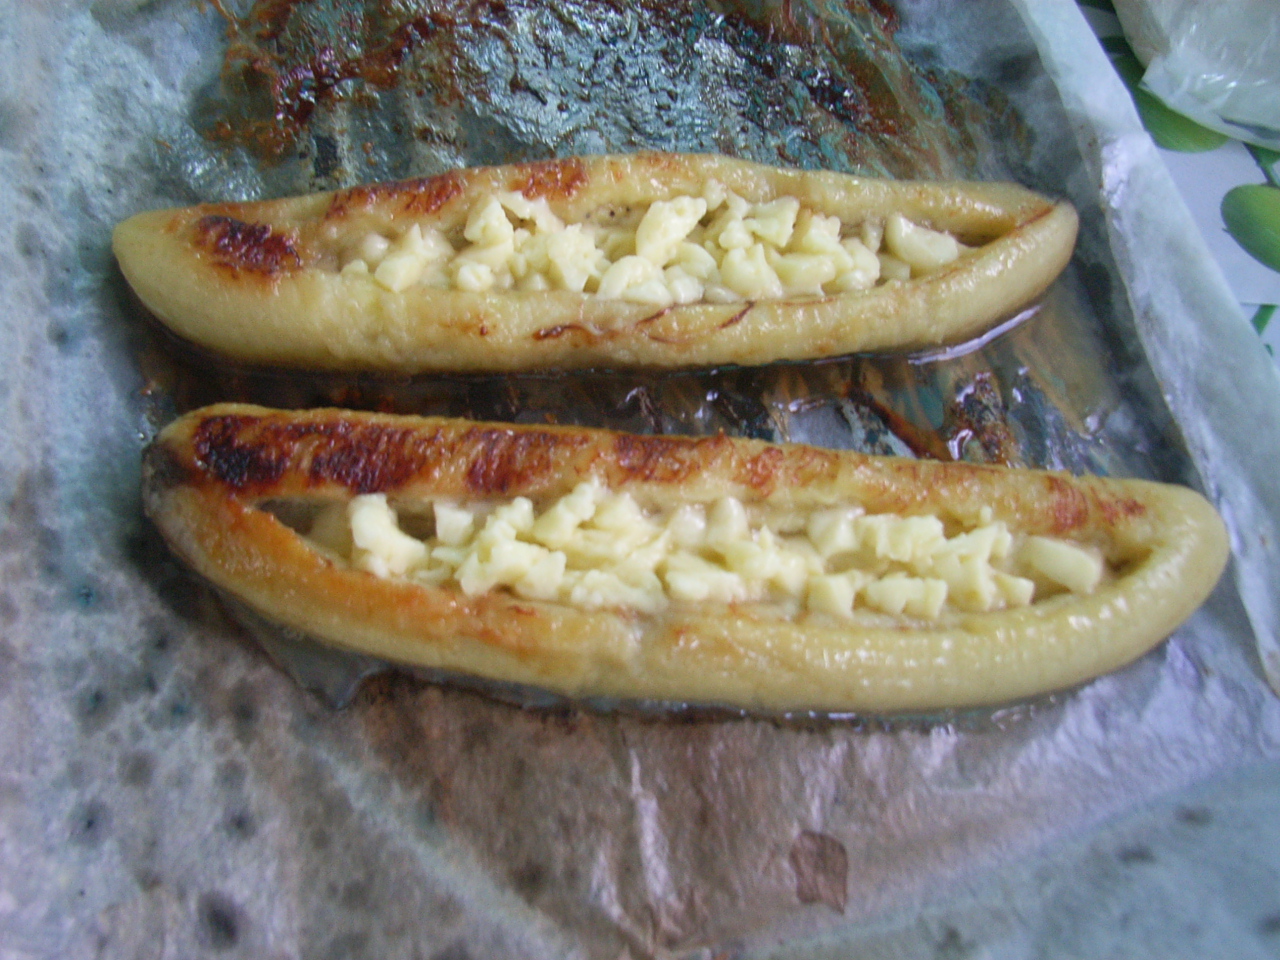 煮香蕉是印尼早餐的主食之一 库存图片. 图片 包括有 中流砥柱, 捷克人, 印度尼西亚, 菜单, 一个 - 223873757